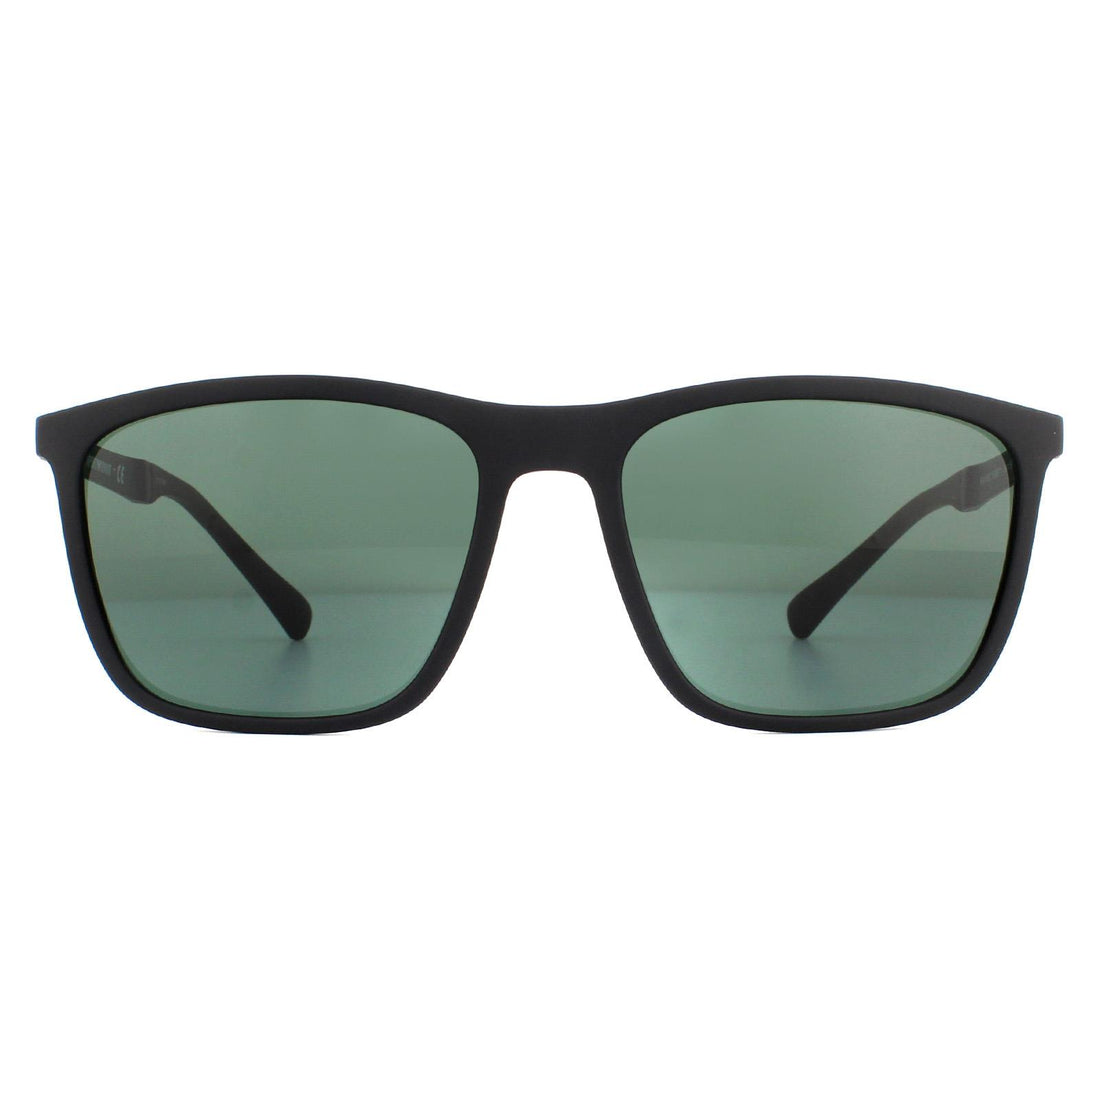 Emporio Armani EA4150 Sunglasses Rubber Black / Green